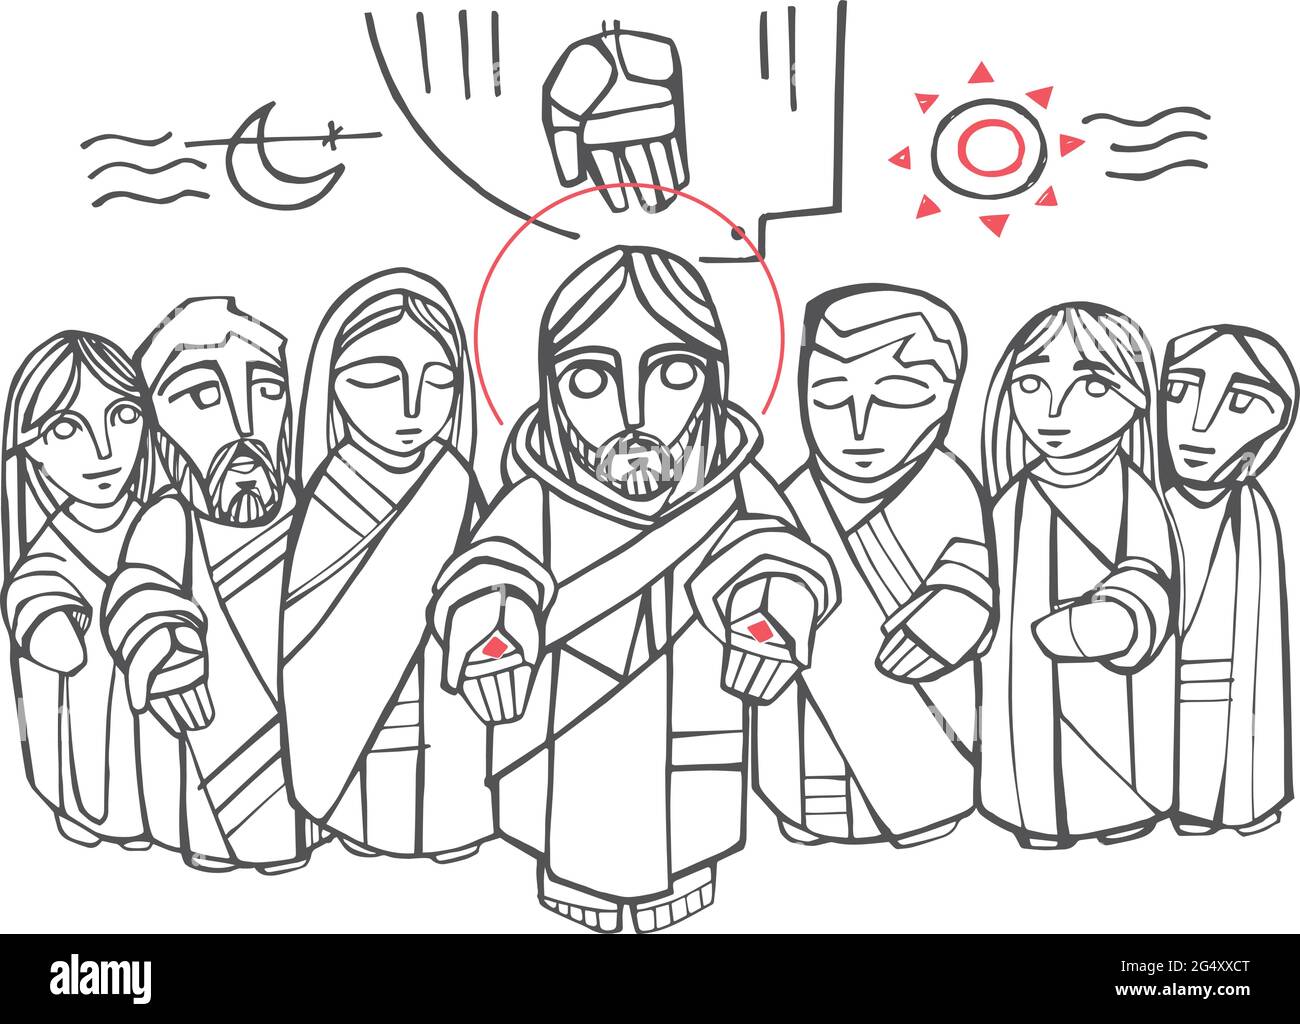 Illustration vectorielle ou dessin à la main de Jésus-Christ, de la Vierge Marie, des disciples et des symboles religieux chrétiens Illustration de Vecteur